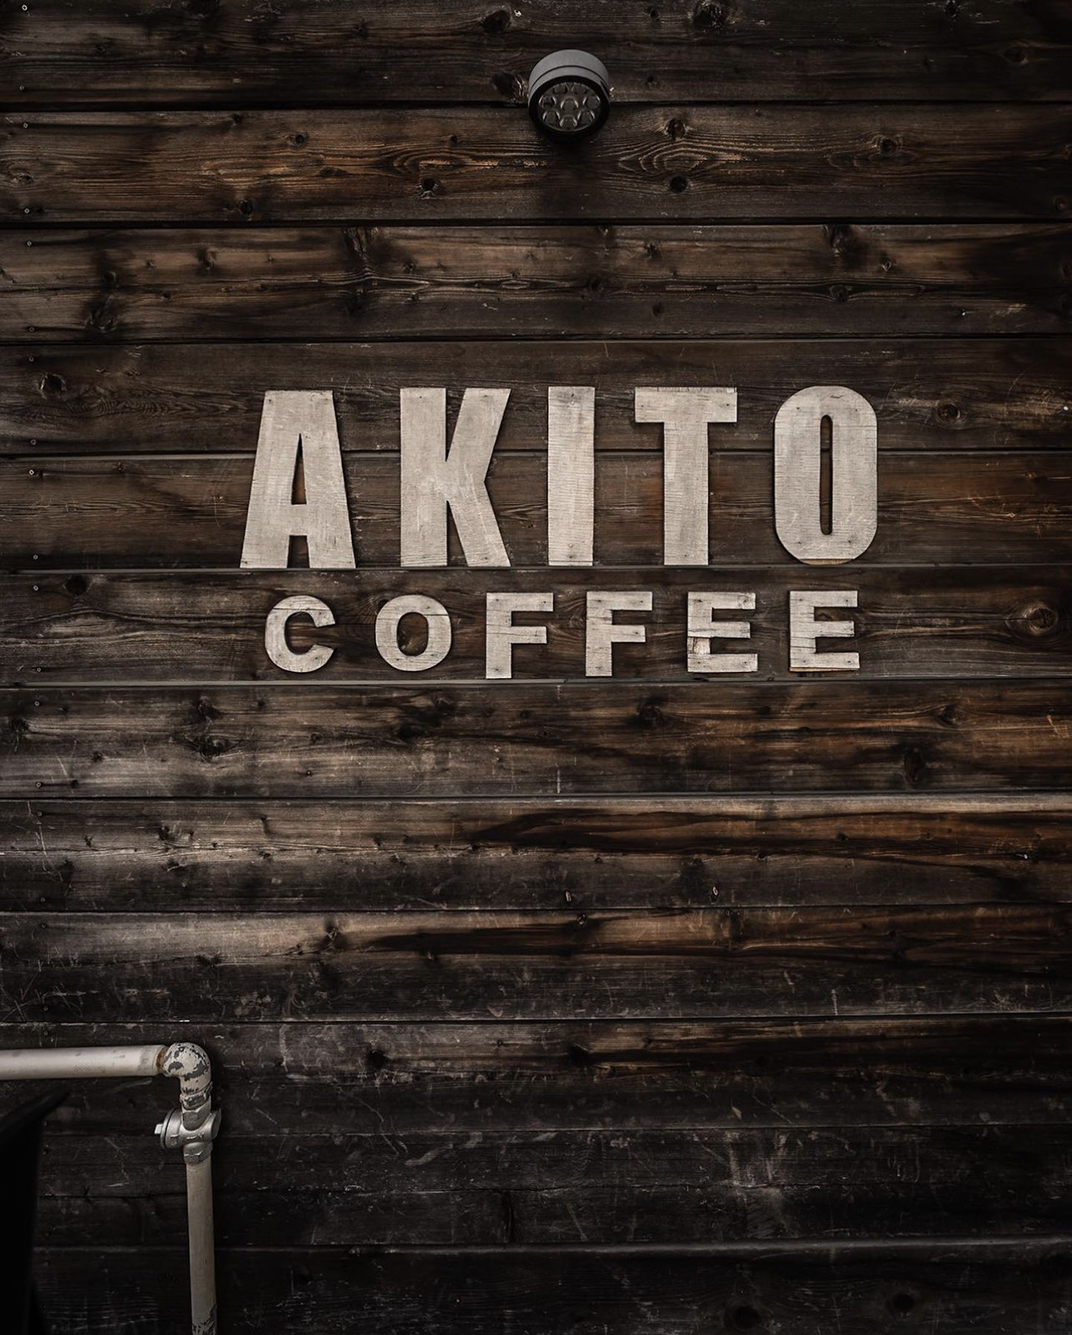 复古风咖啡馆和商店AKITO COFFEE 日本 北京 上海 珠海 广州 武汉 杭州 佛山 澳门 logo设计 vi设计 空间设计